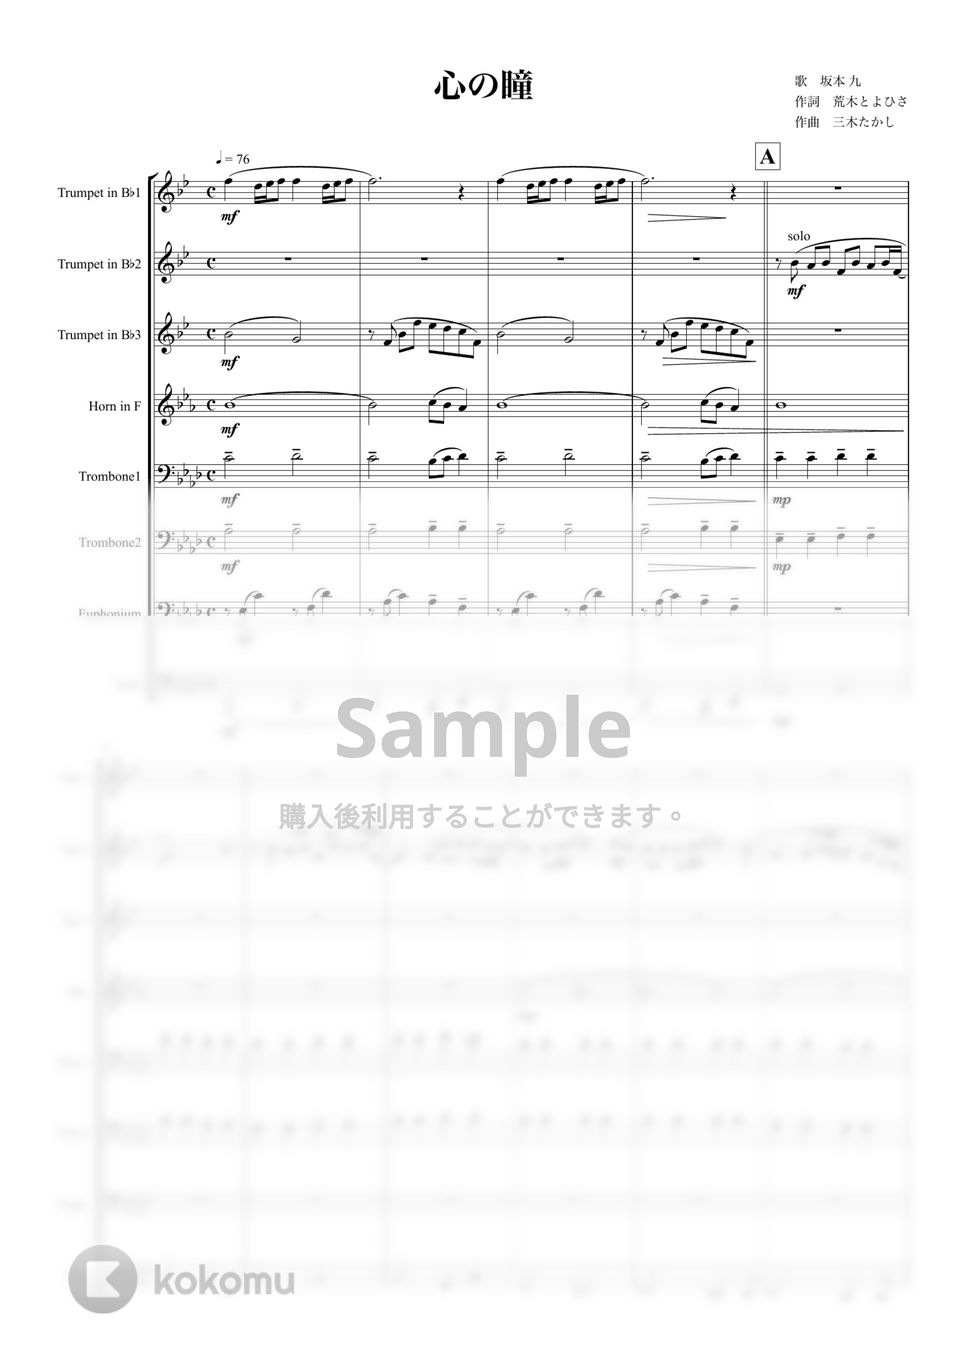 坂本九 - 心の瞳 (金管八重奏) by マロニエミュージック